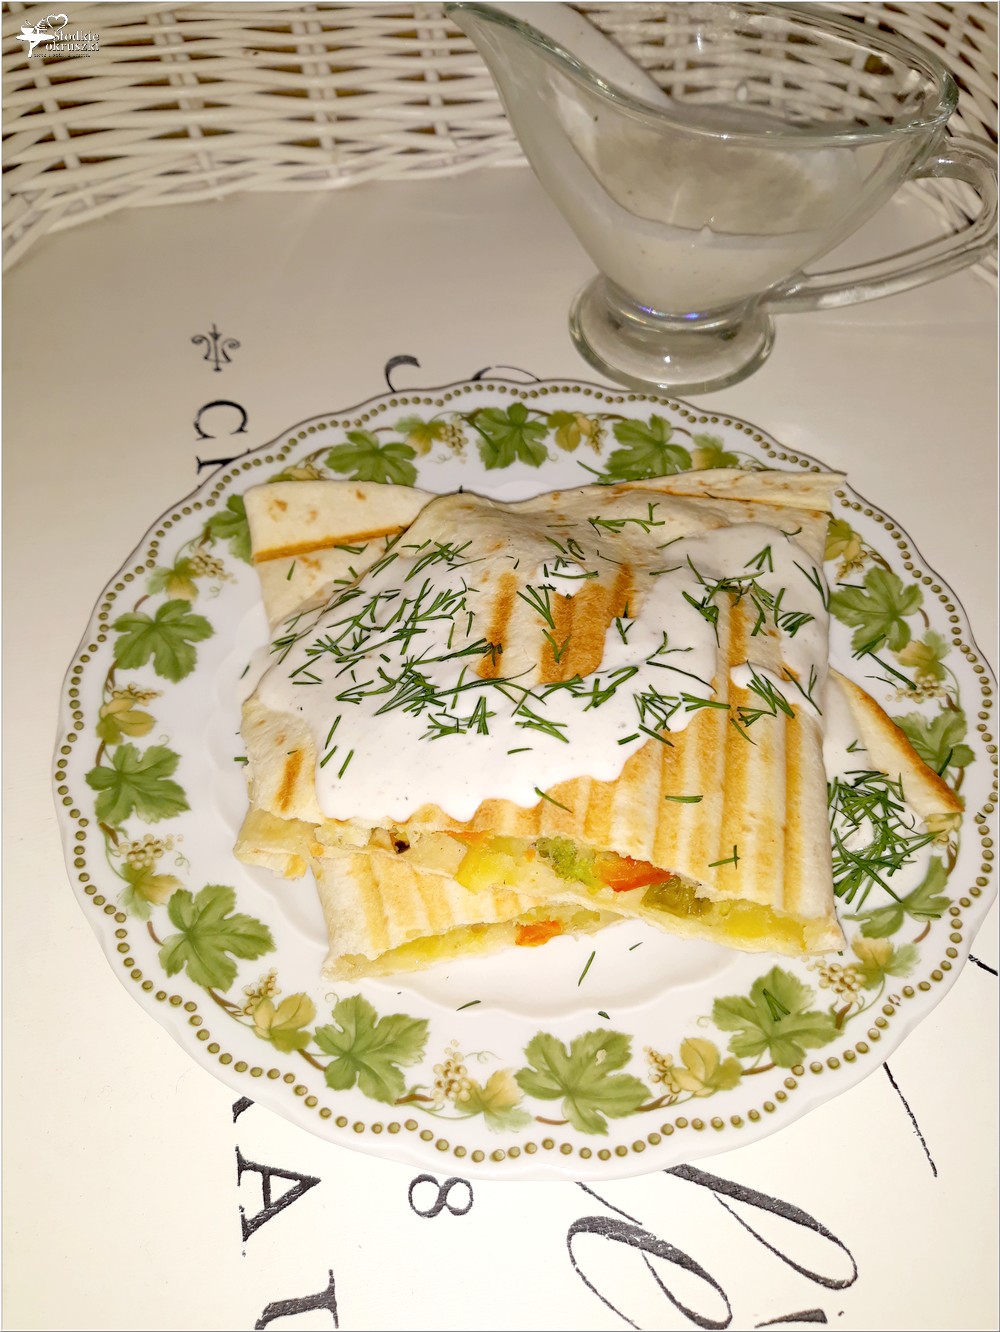 Grillowana tortilla z warzywami i domowym sosem czosnkowym